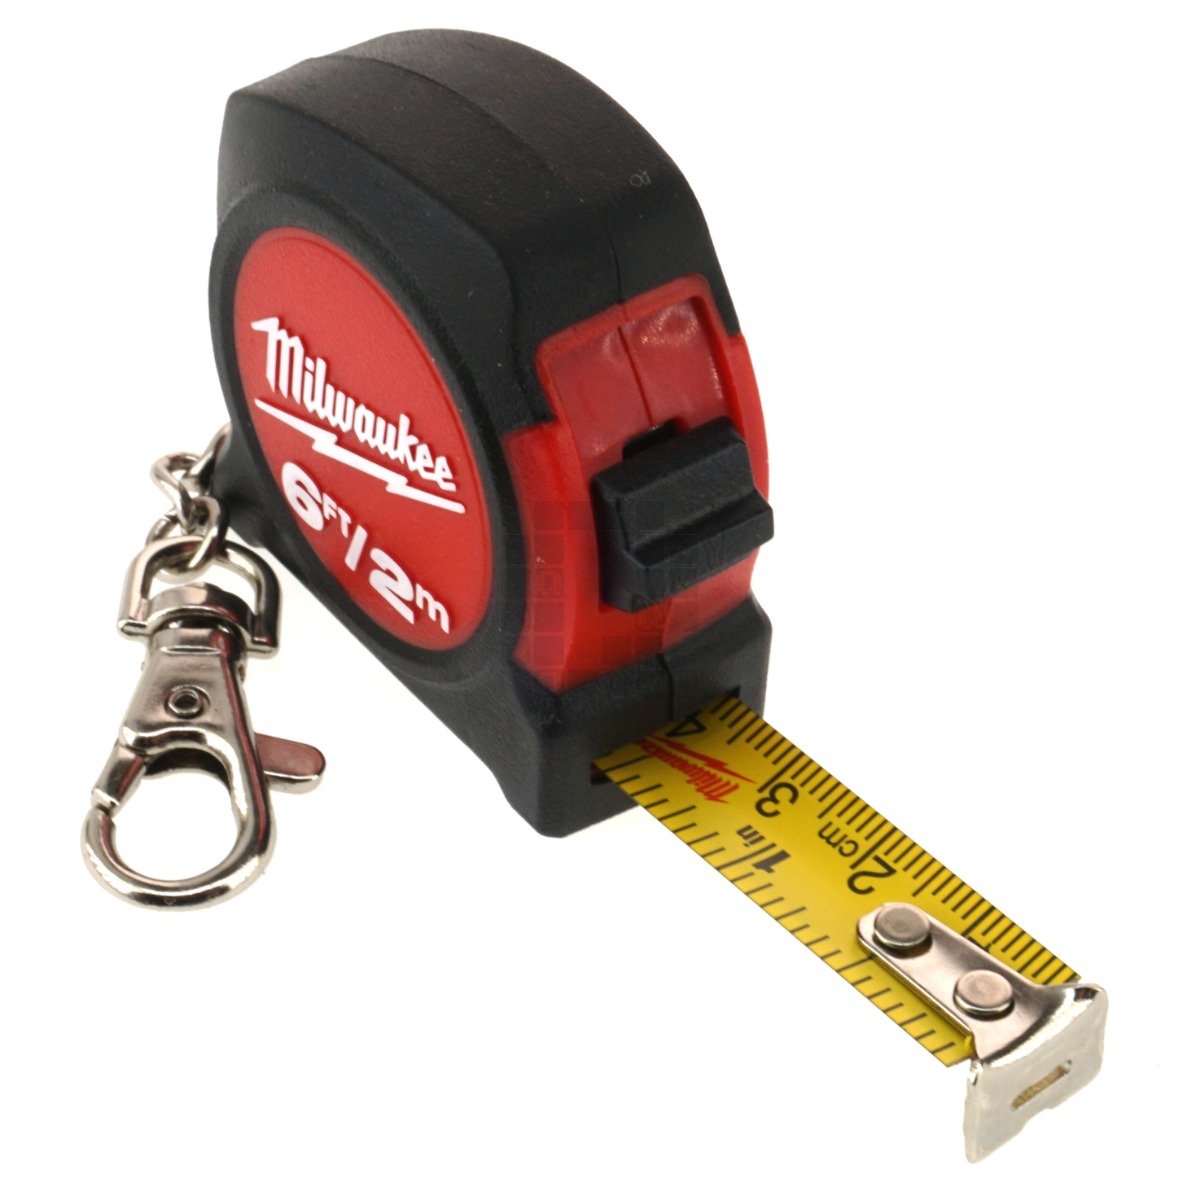 Milwaukee Plastic Keychain Tape Measure 48-22-5506, 0.82 Width